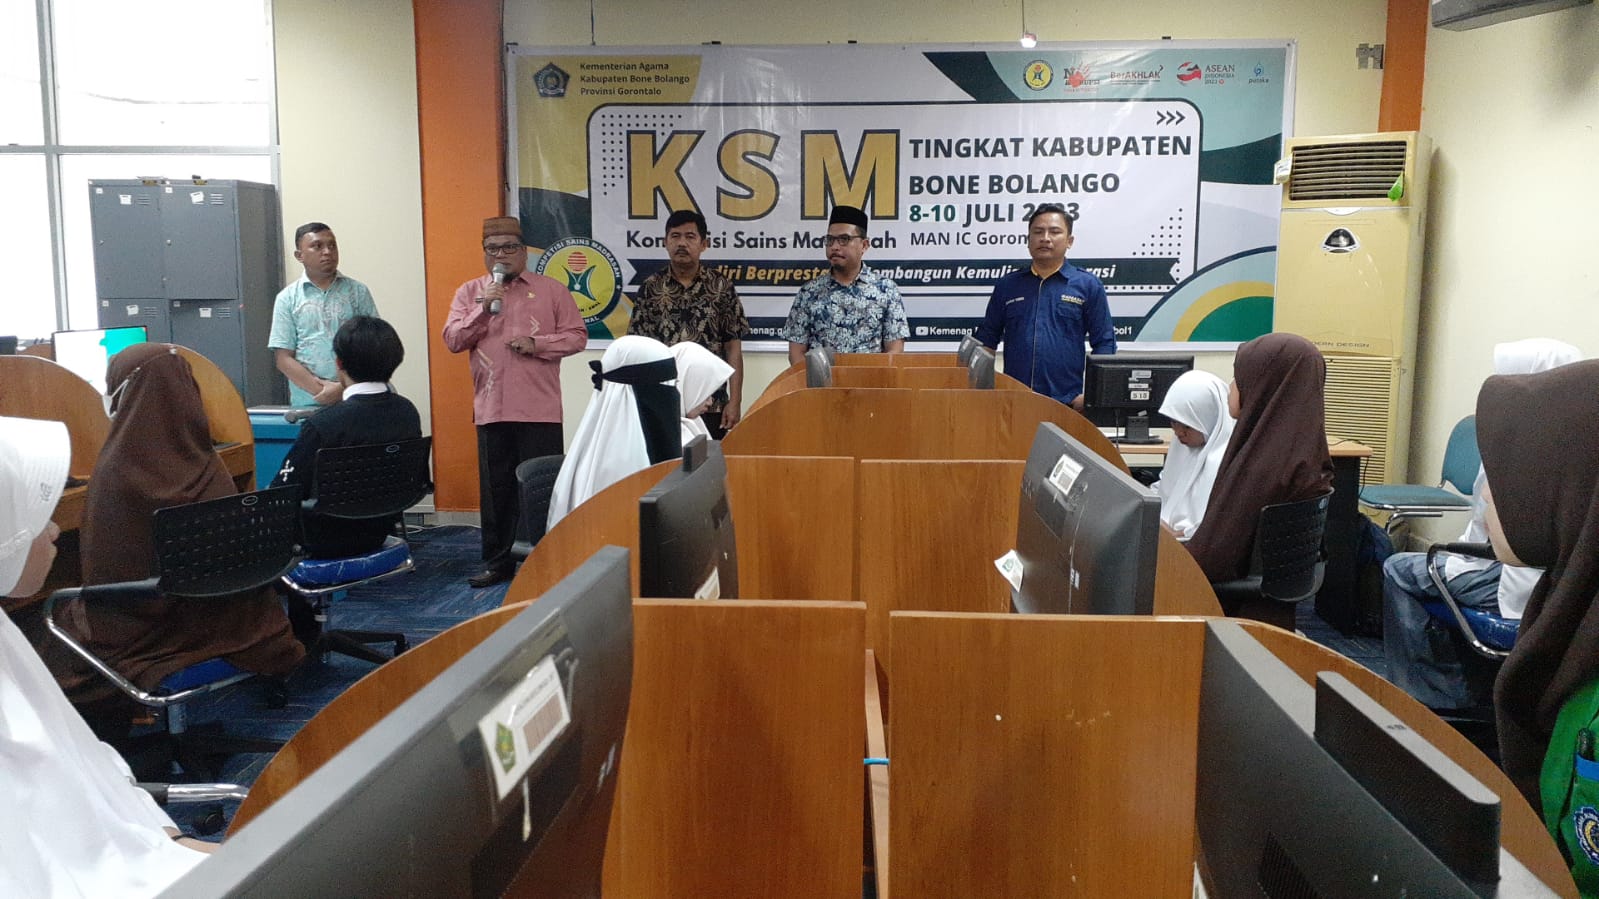 12 Siswa MAN IC Gorontalo Ikuti Lomba KSM Tingkat Kabupaten 2023